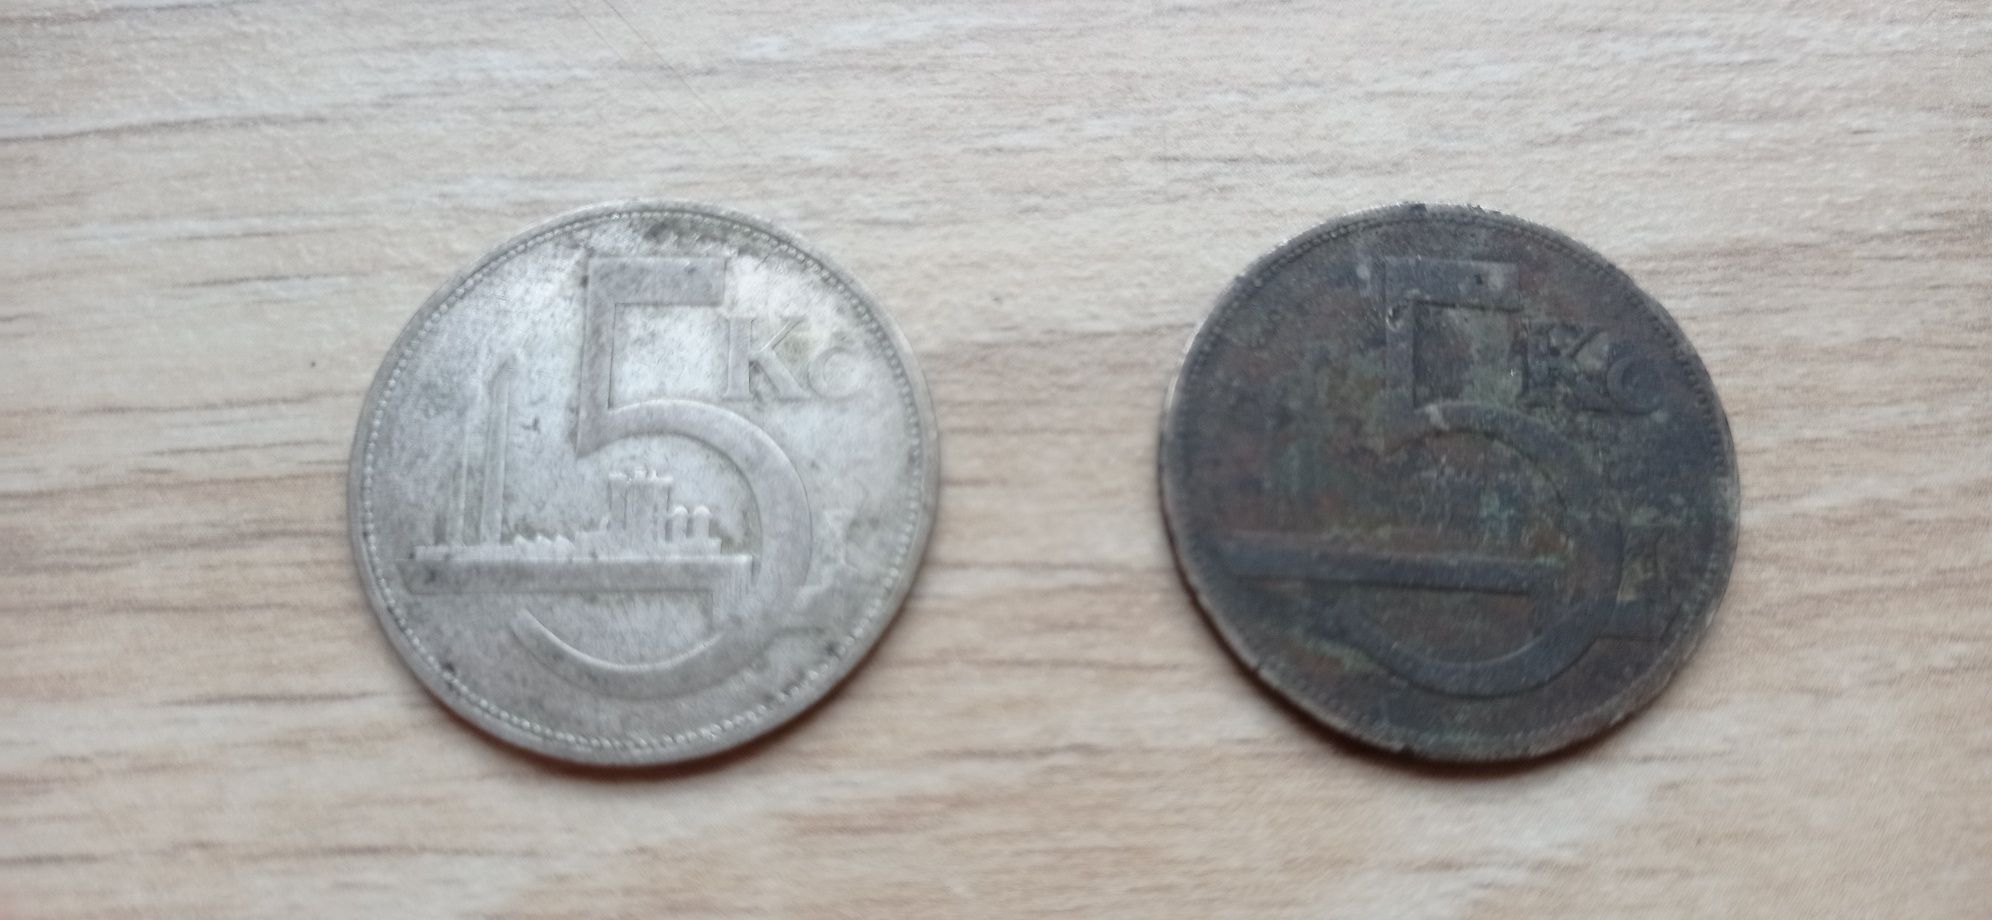 Czechosłowacja 2 monety srebro